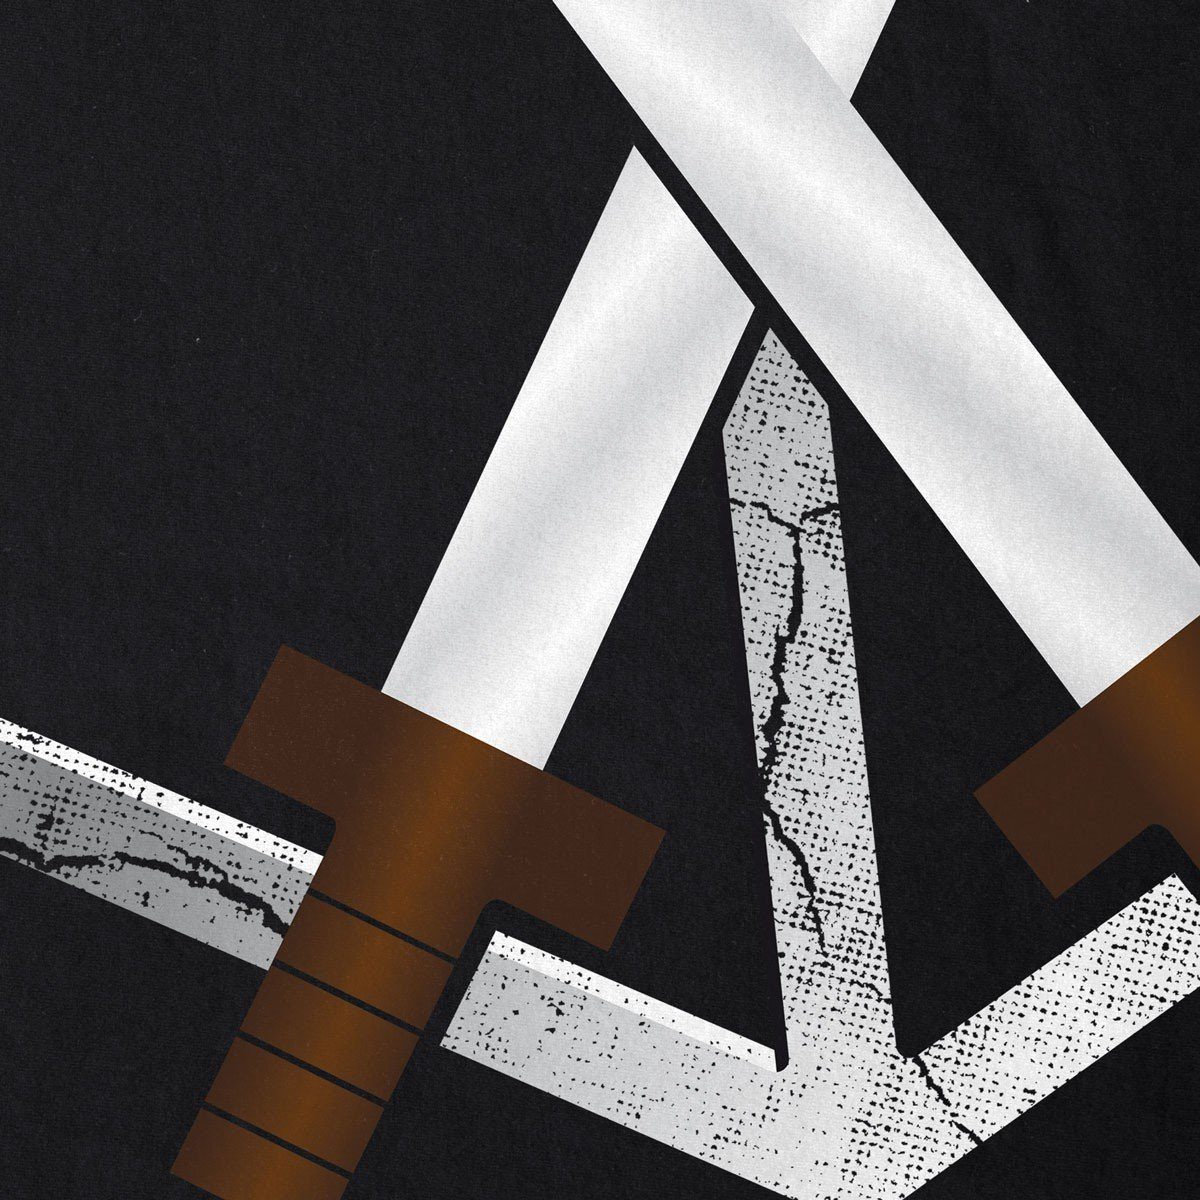 Titan Riesen on Print-Shirt AoT T-Shirt Eren style3 Ausbildungstruppe Wappen Attack Emblem Herren